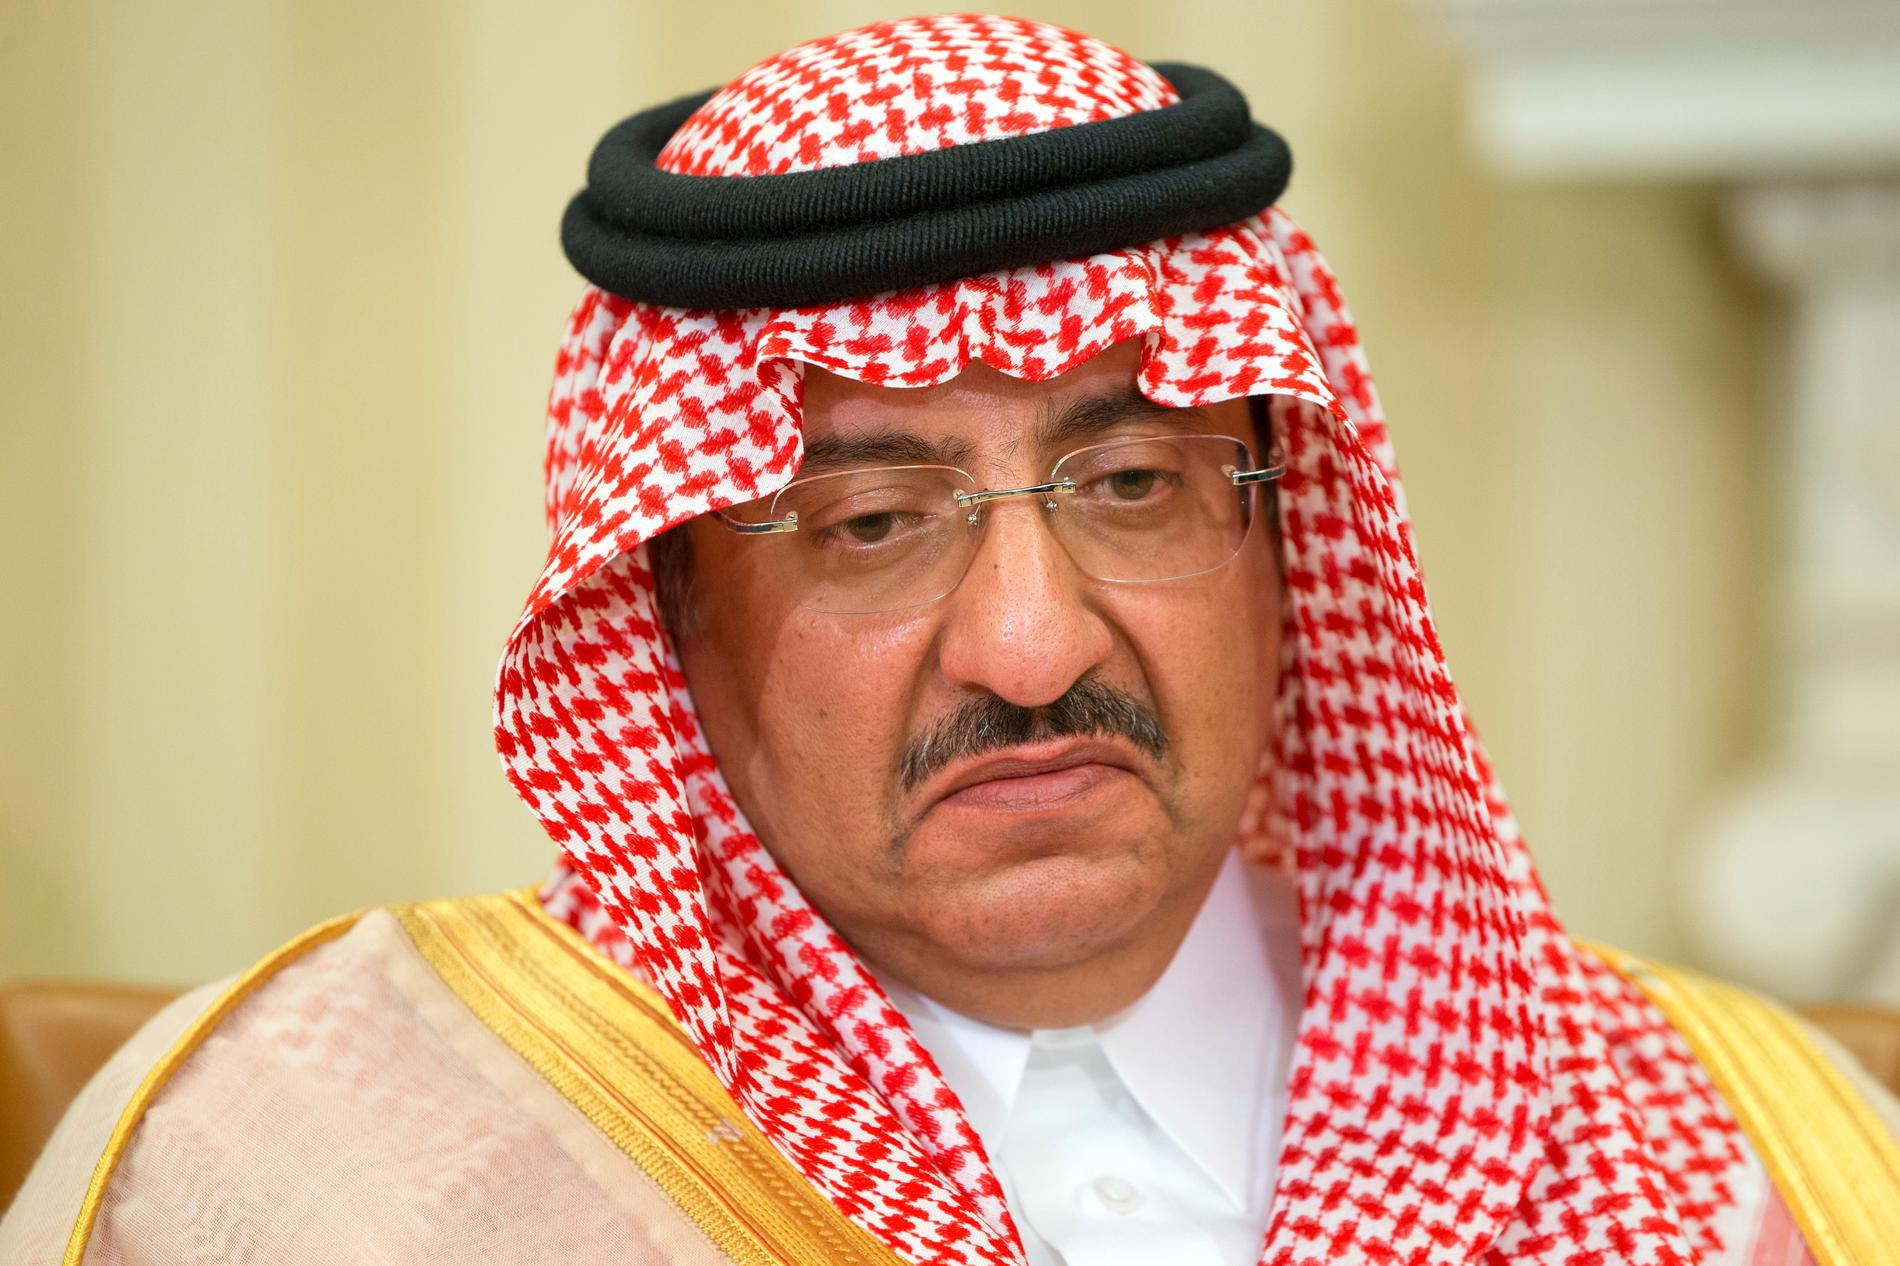 Den tidigare kronprinsen och farbrodern till Mohammed bin Salman – Mohammed bin Nayef